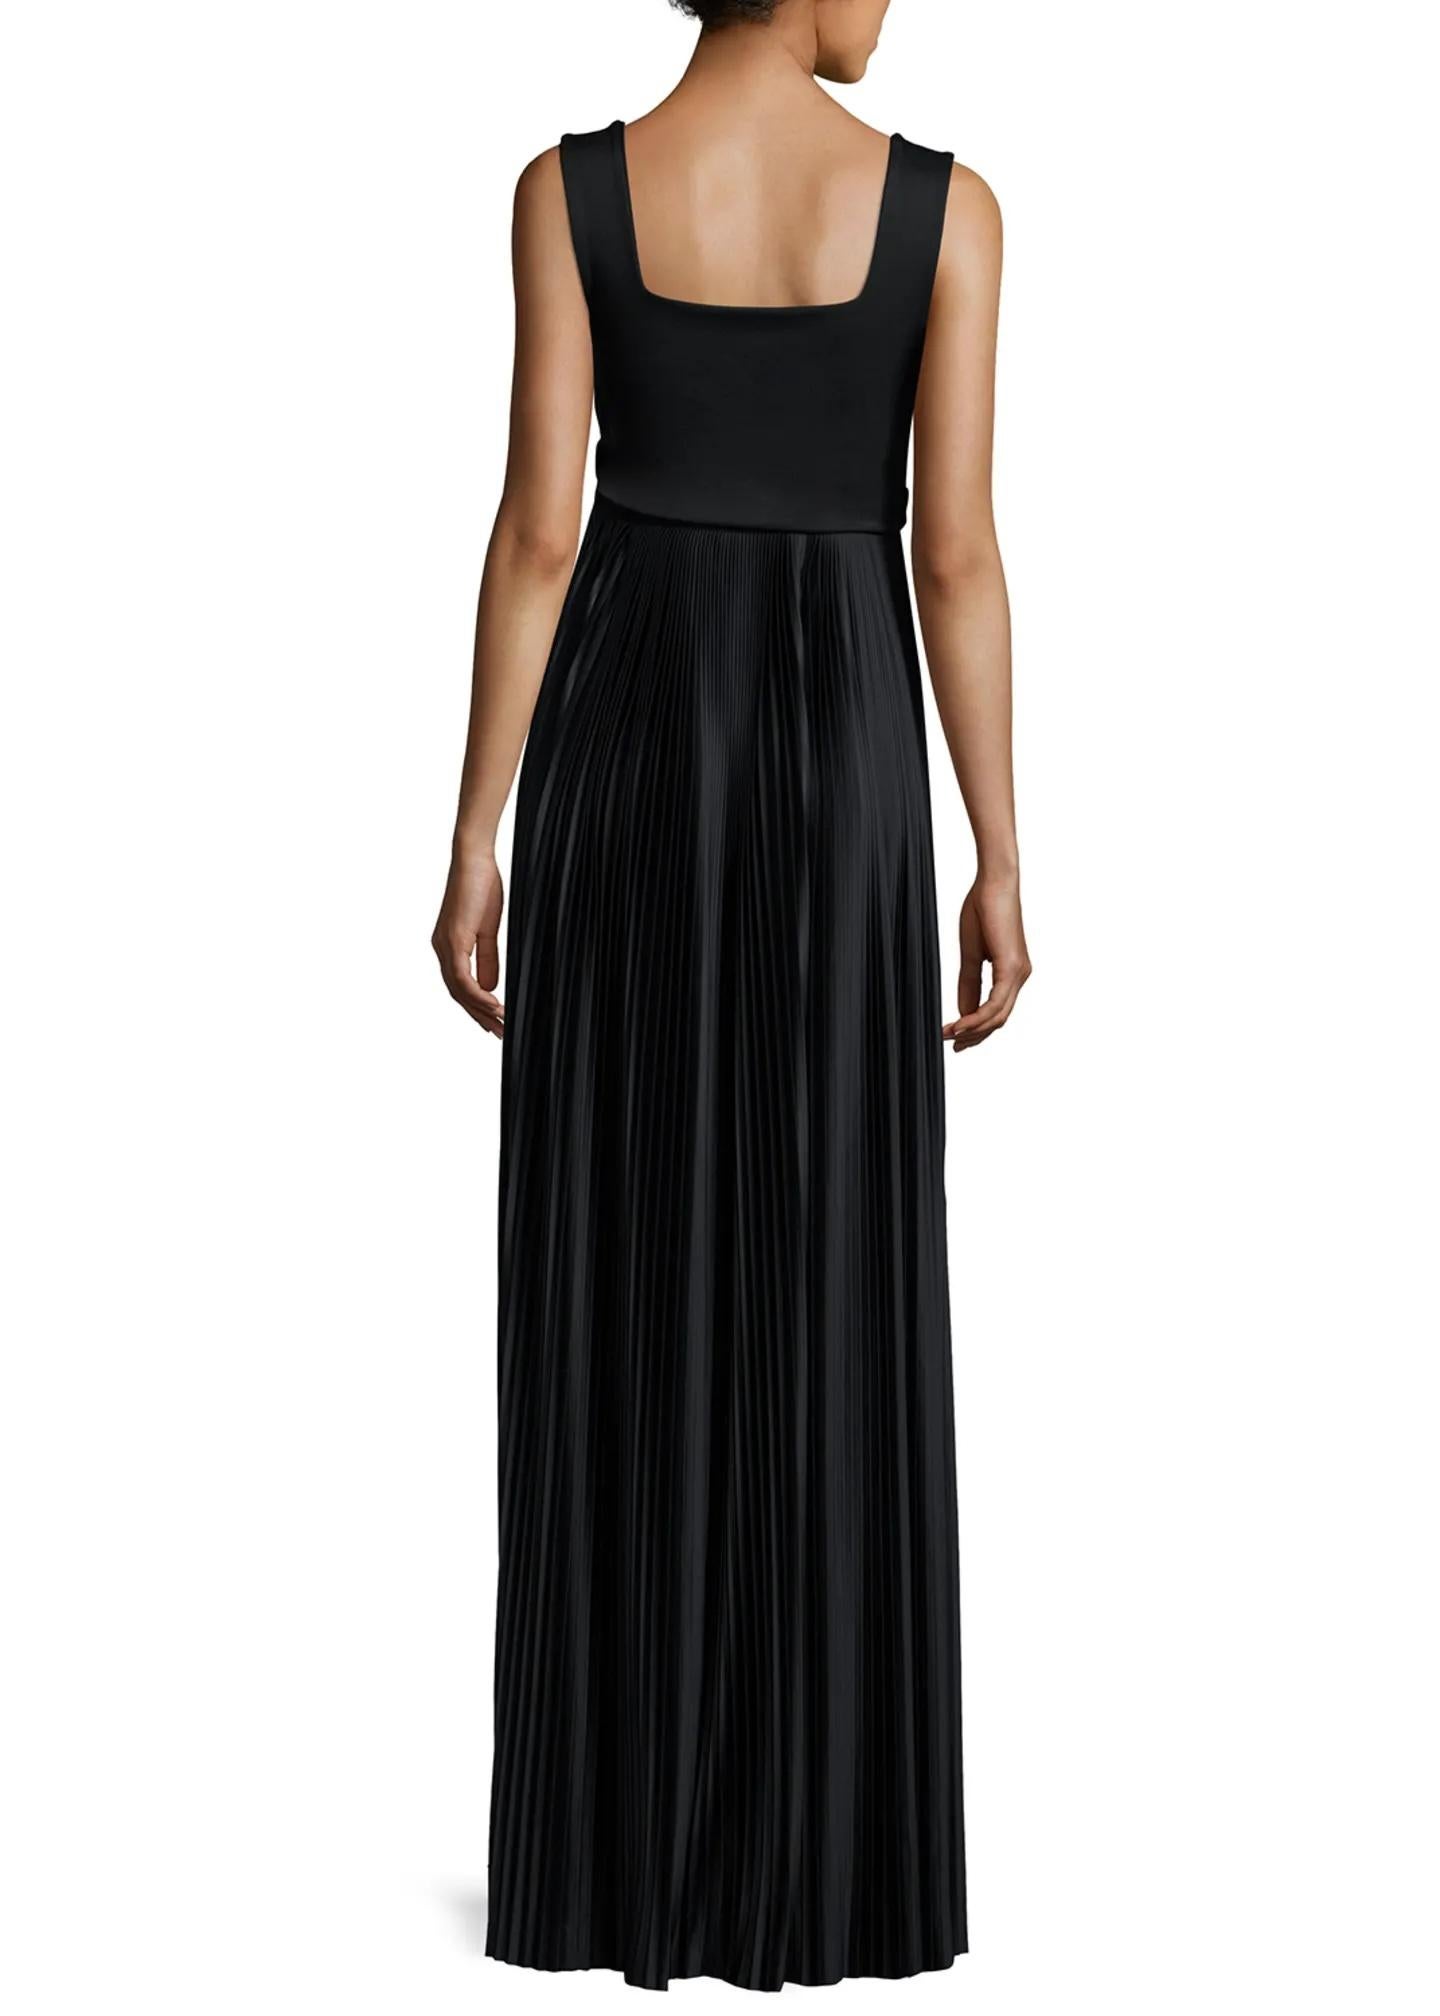 Hier kommt der Inbegriff von Raffinesse und zeitloser Eleganz: Das schwarze Kleid Alain von The Row in Größe XS. Dieses exquisite Kleid wurde perfekt verarbeitet und ist brandneu mit Etikett. Es strahlt aus jeder Naht dezenten Luxus aus.

Das Kleid